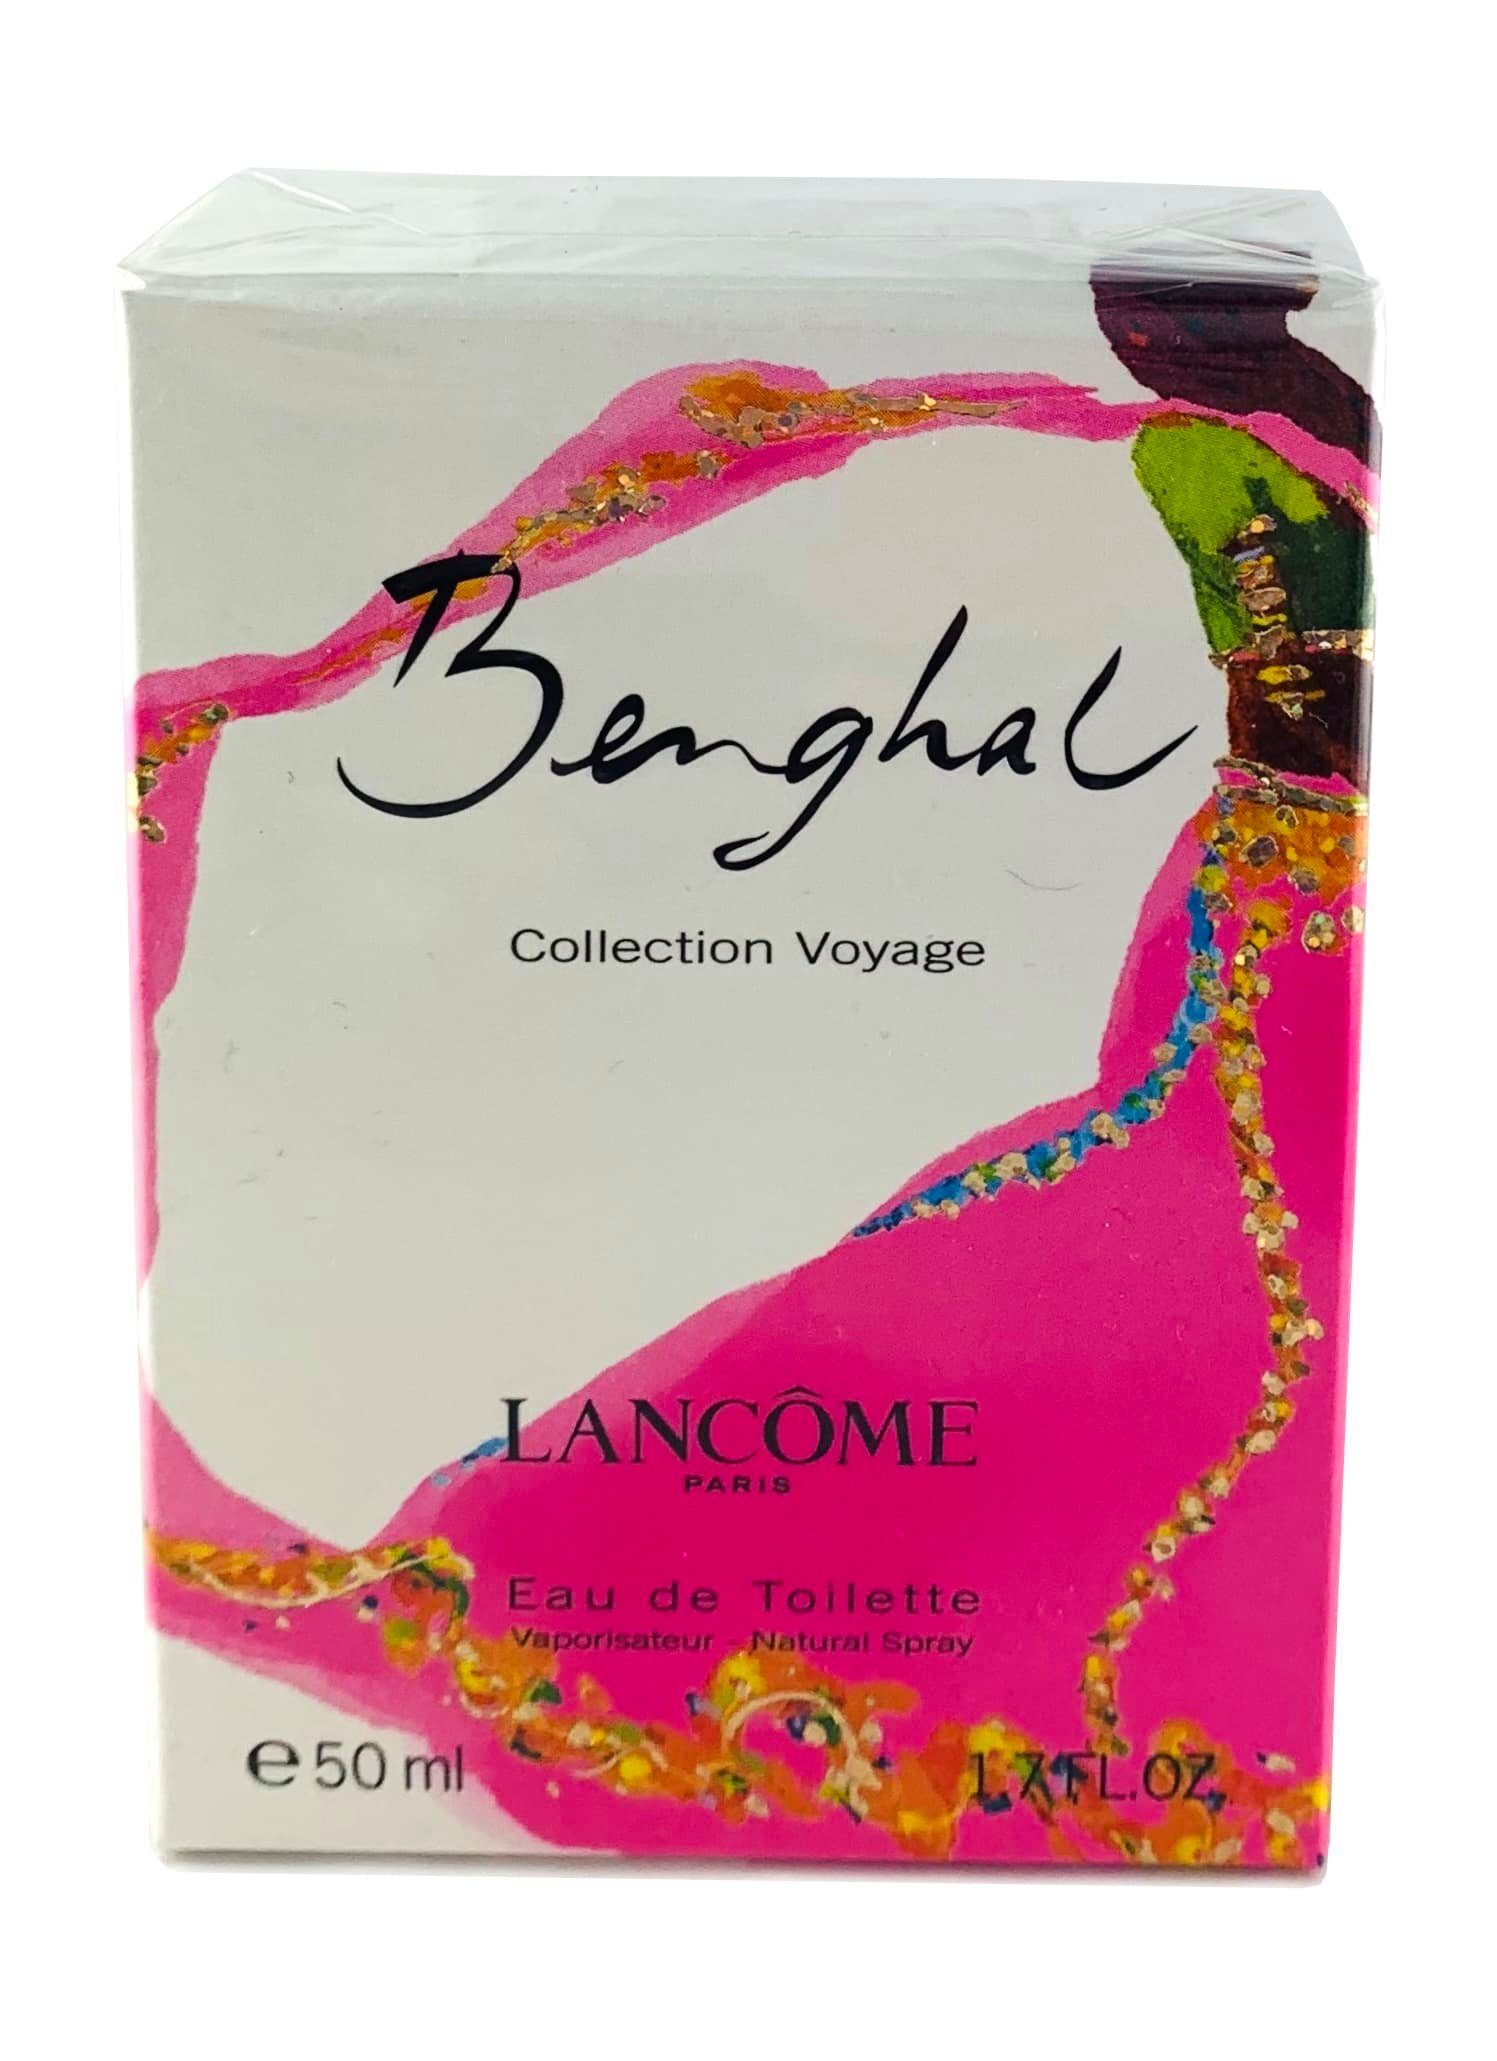 LANCOME Eau de Toilette Lancôme "Benghal Collection Voyage" Edt Spray 50 ml